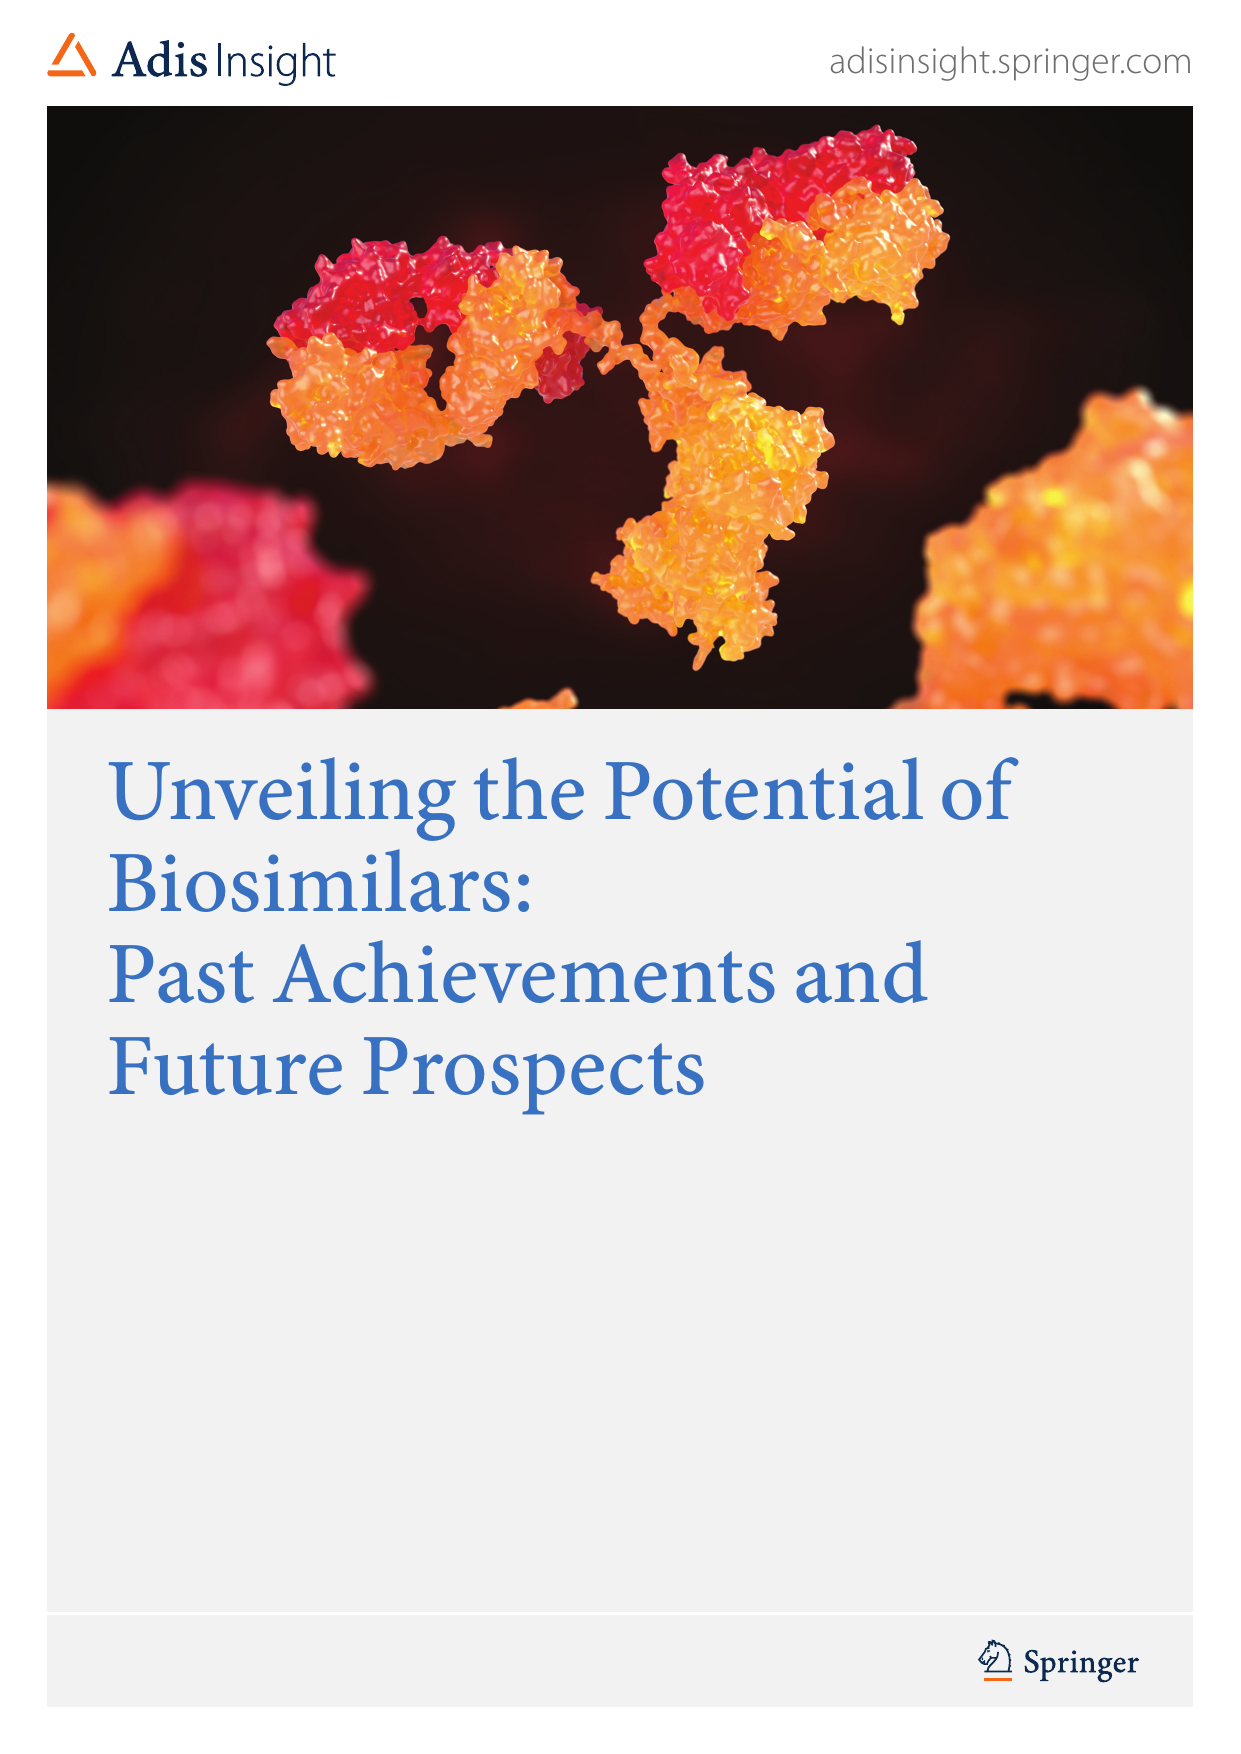 2024探索生物类似药的潜力历史成就与未来前景研究报告-英文版-AdisInsight.pdf